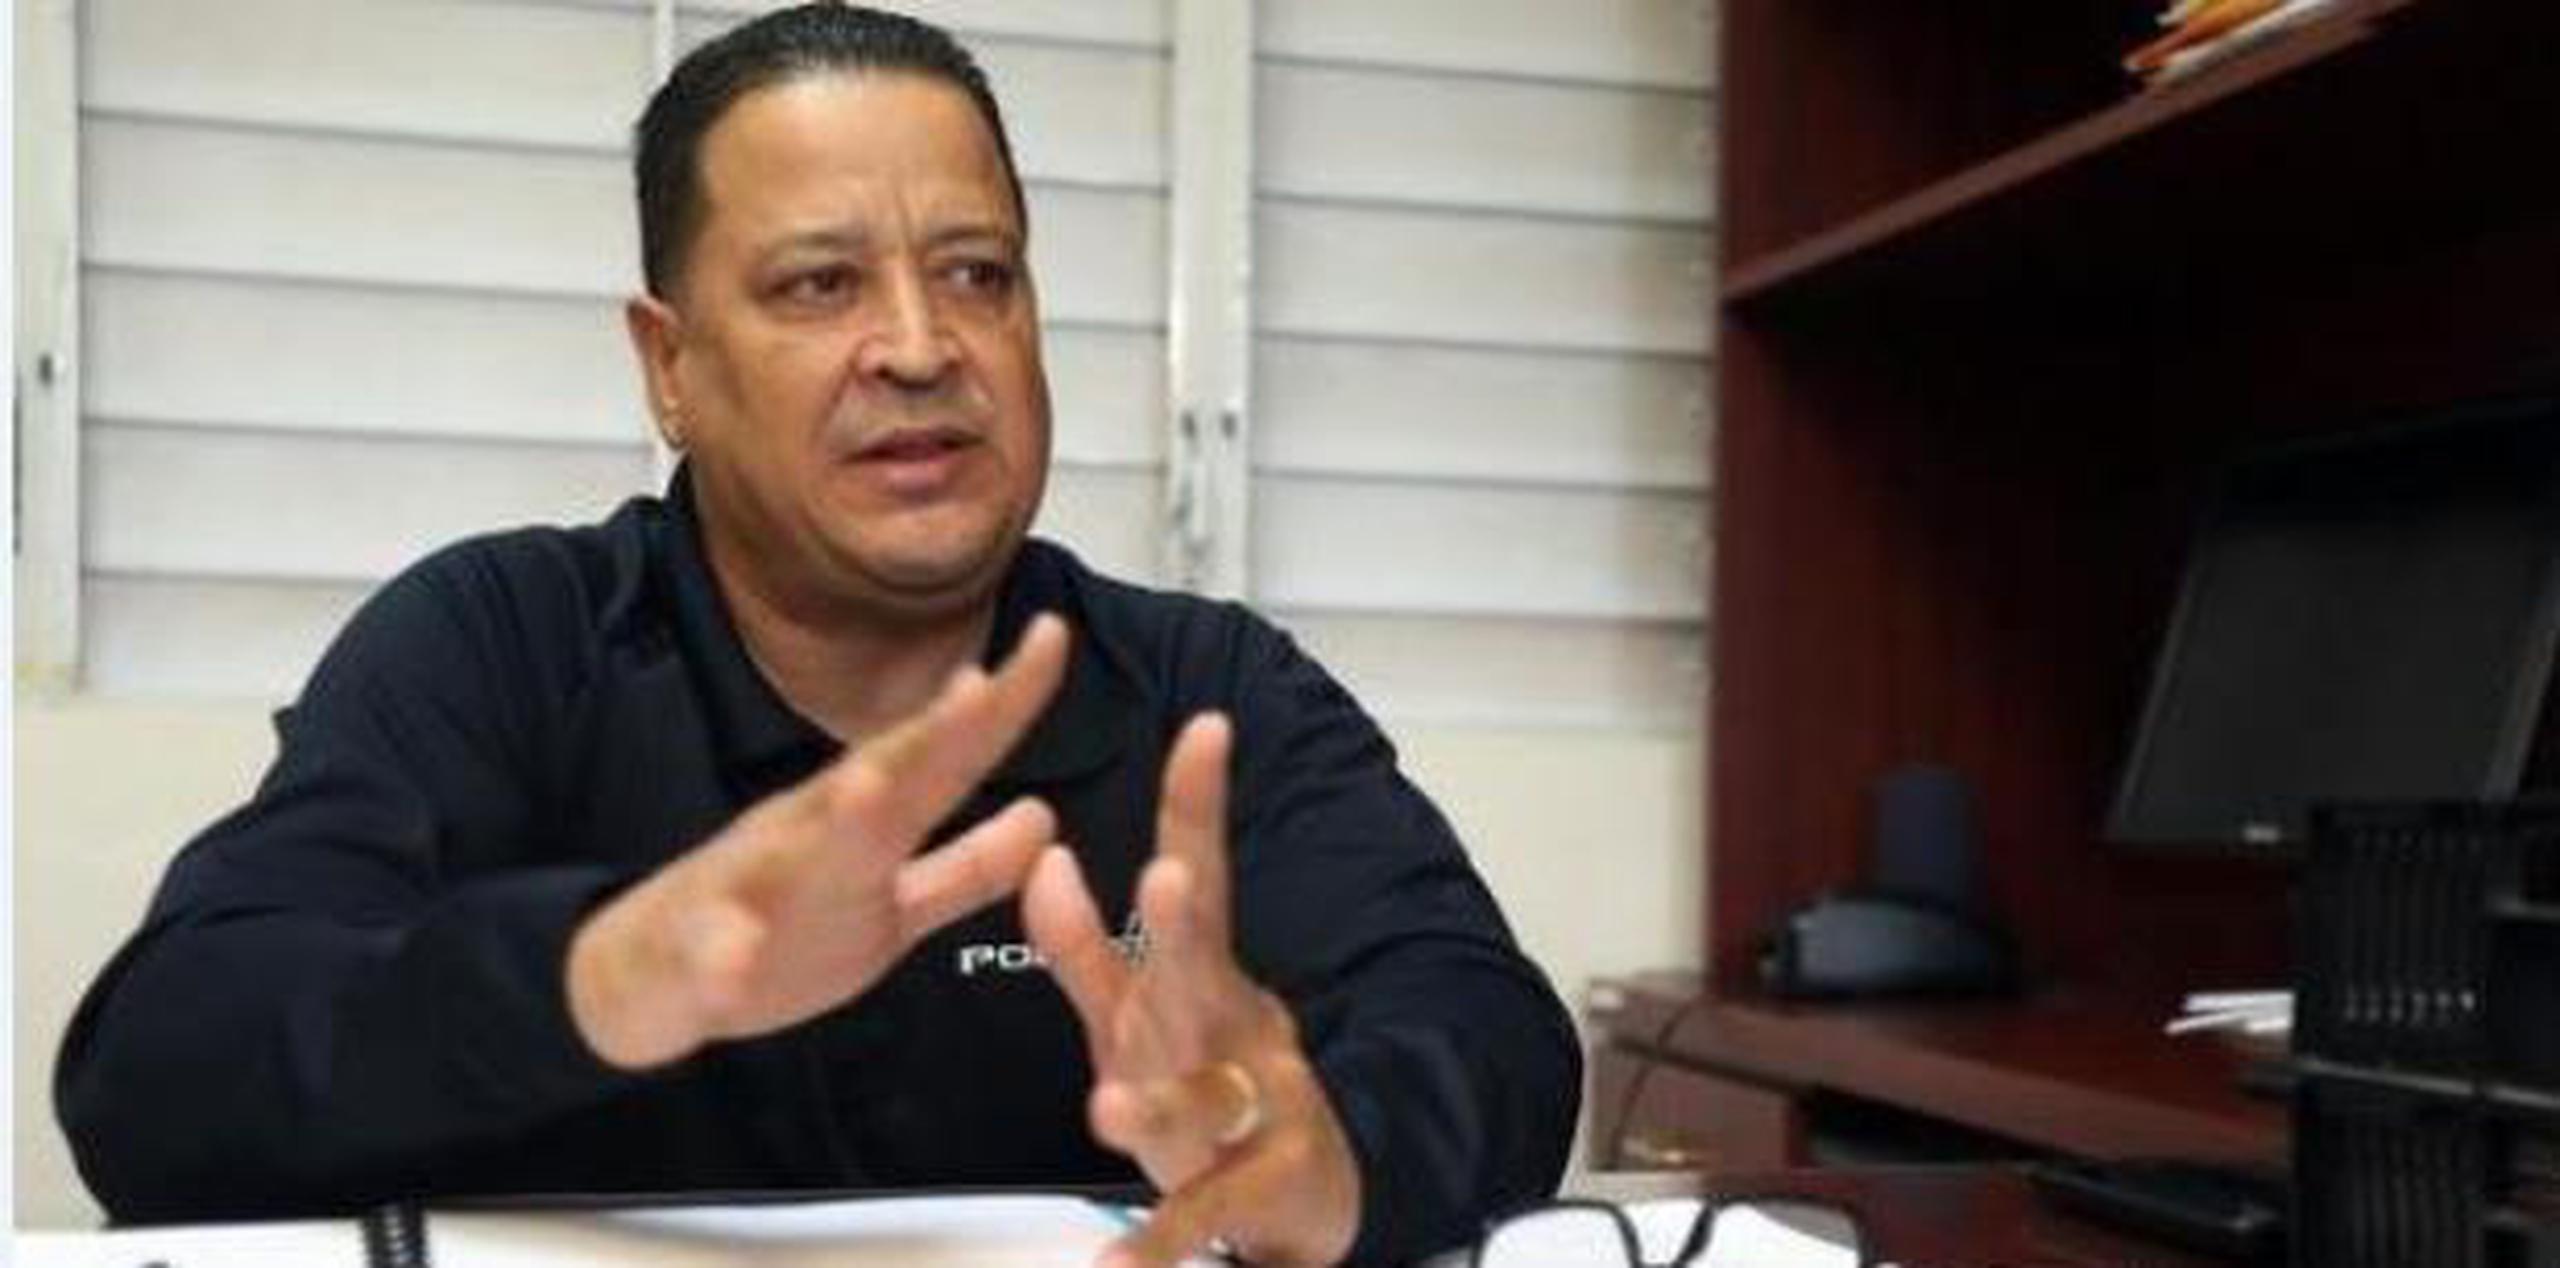 Escalera tiene una larga trayectoria en la Policía de Puerto Rico y ha laborado en toda la cadena de mando de la Uniformada.  (Archivo)